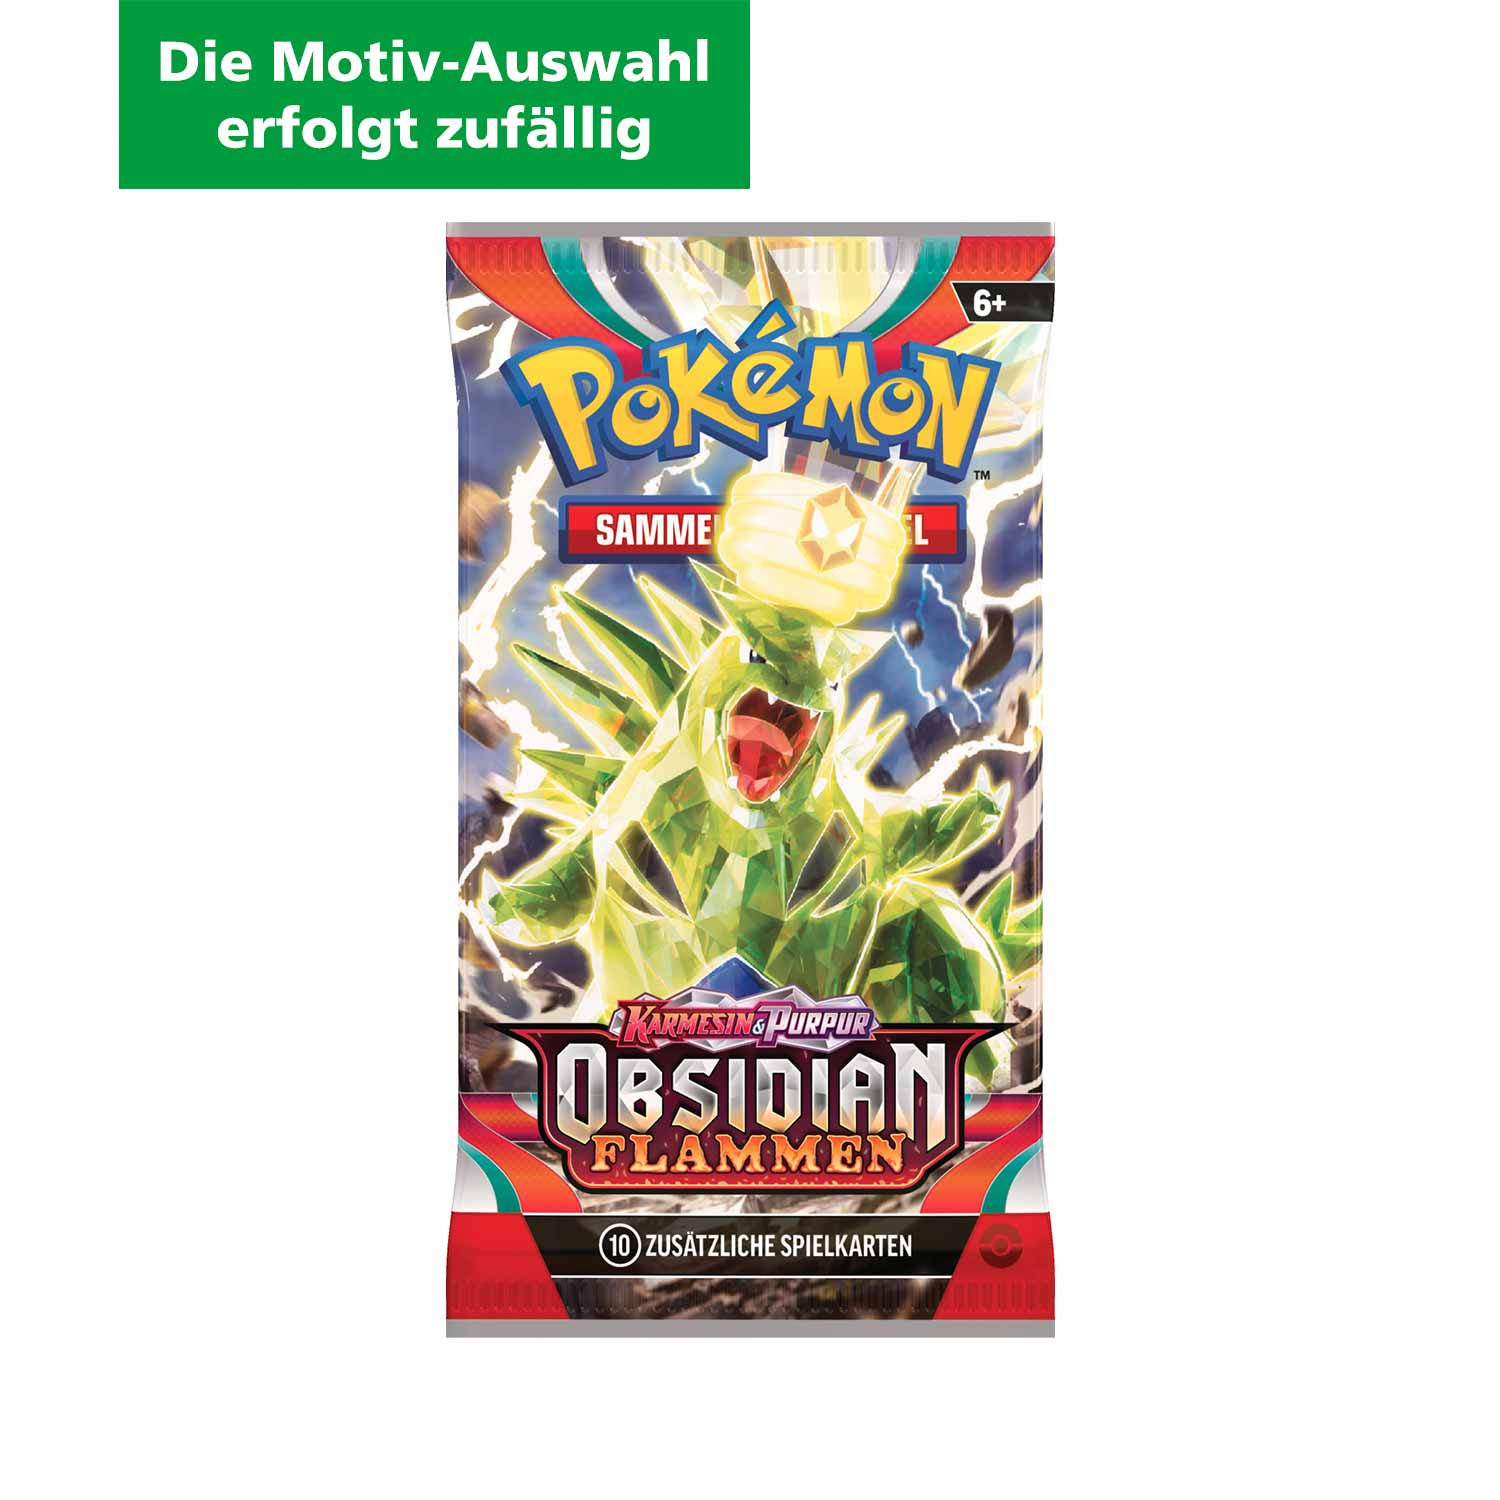 Pokémon Boosterpack Sammelkarten Obsidian Flammen (Die Motiv-Auswahl erfolgt zufällig) 